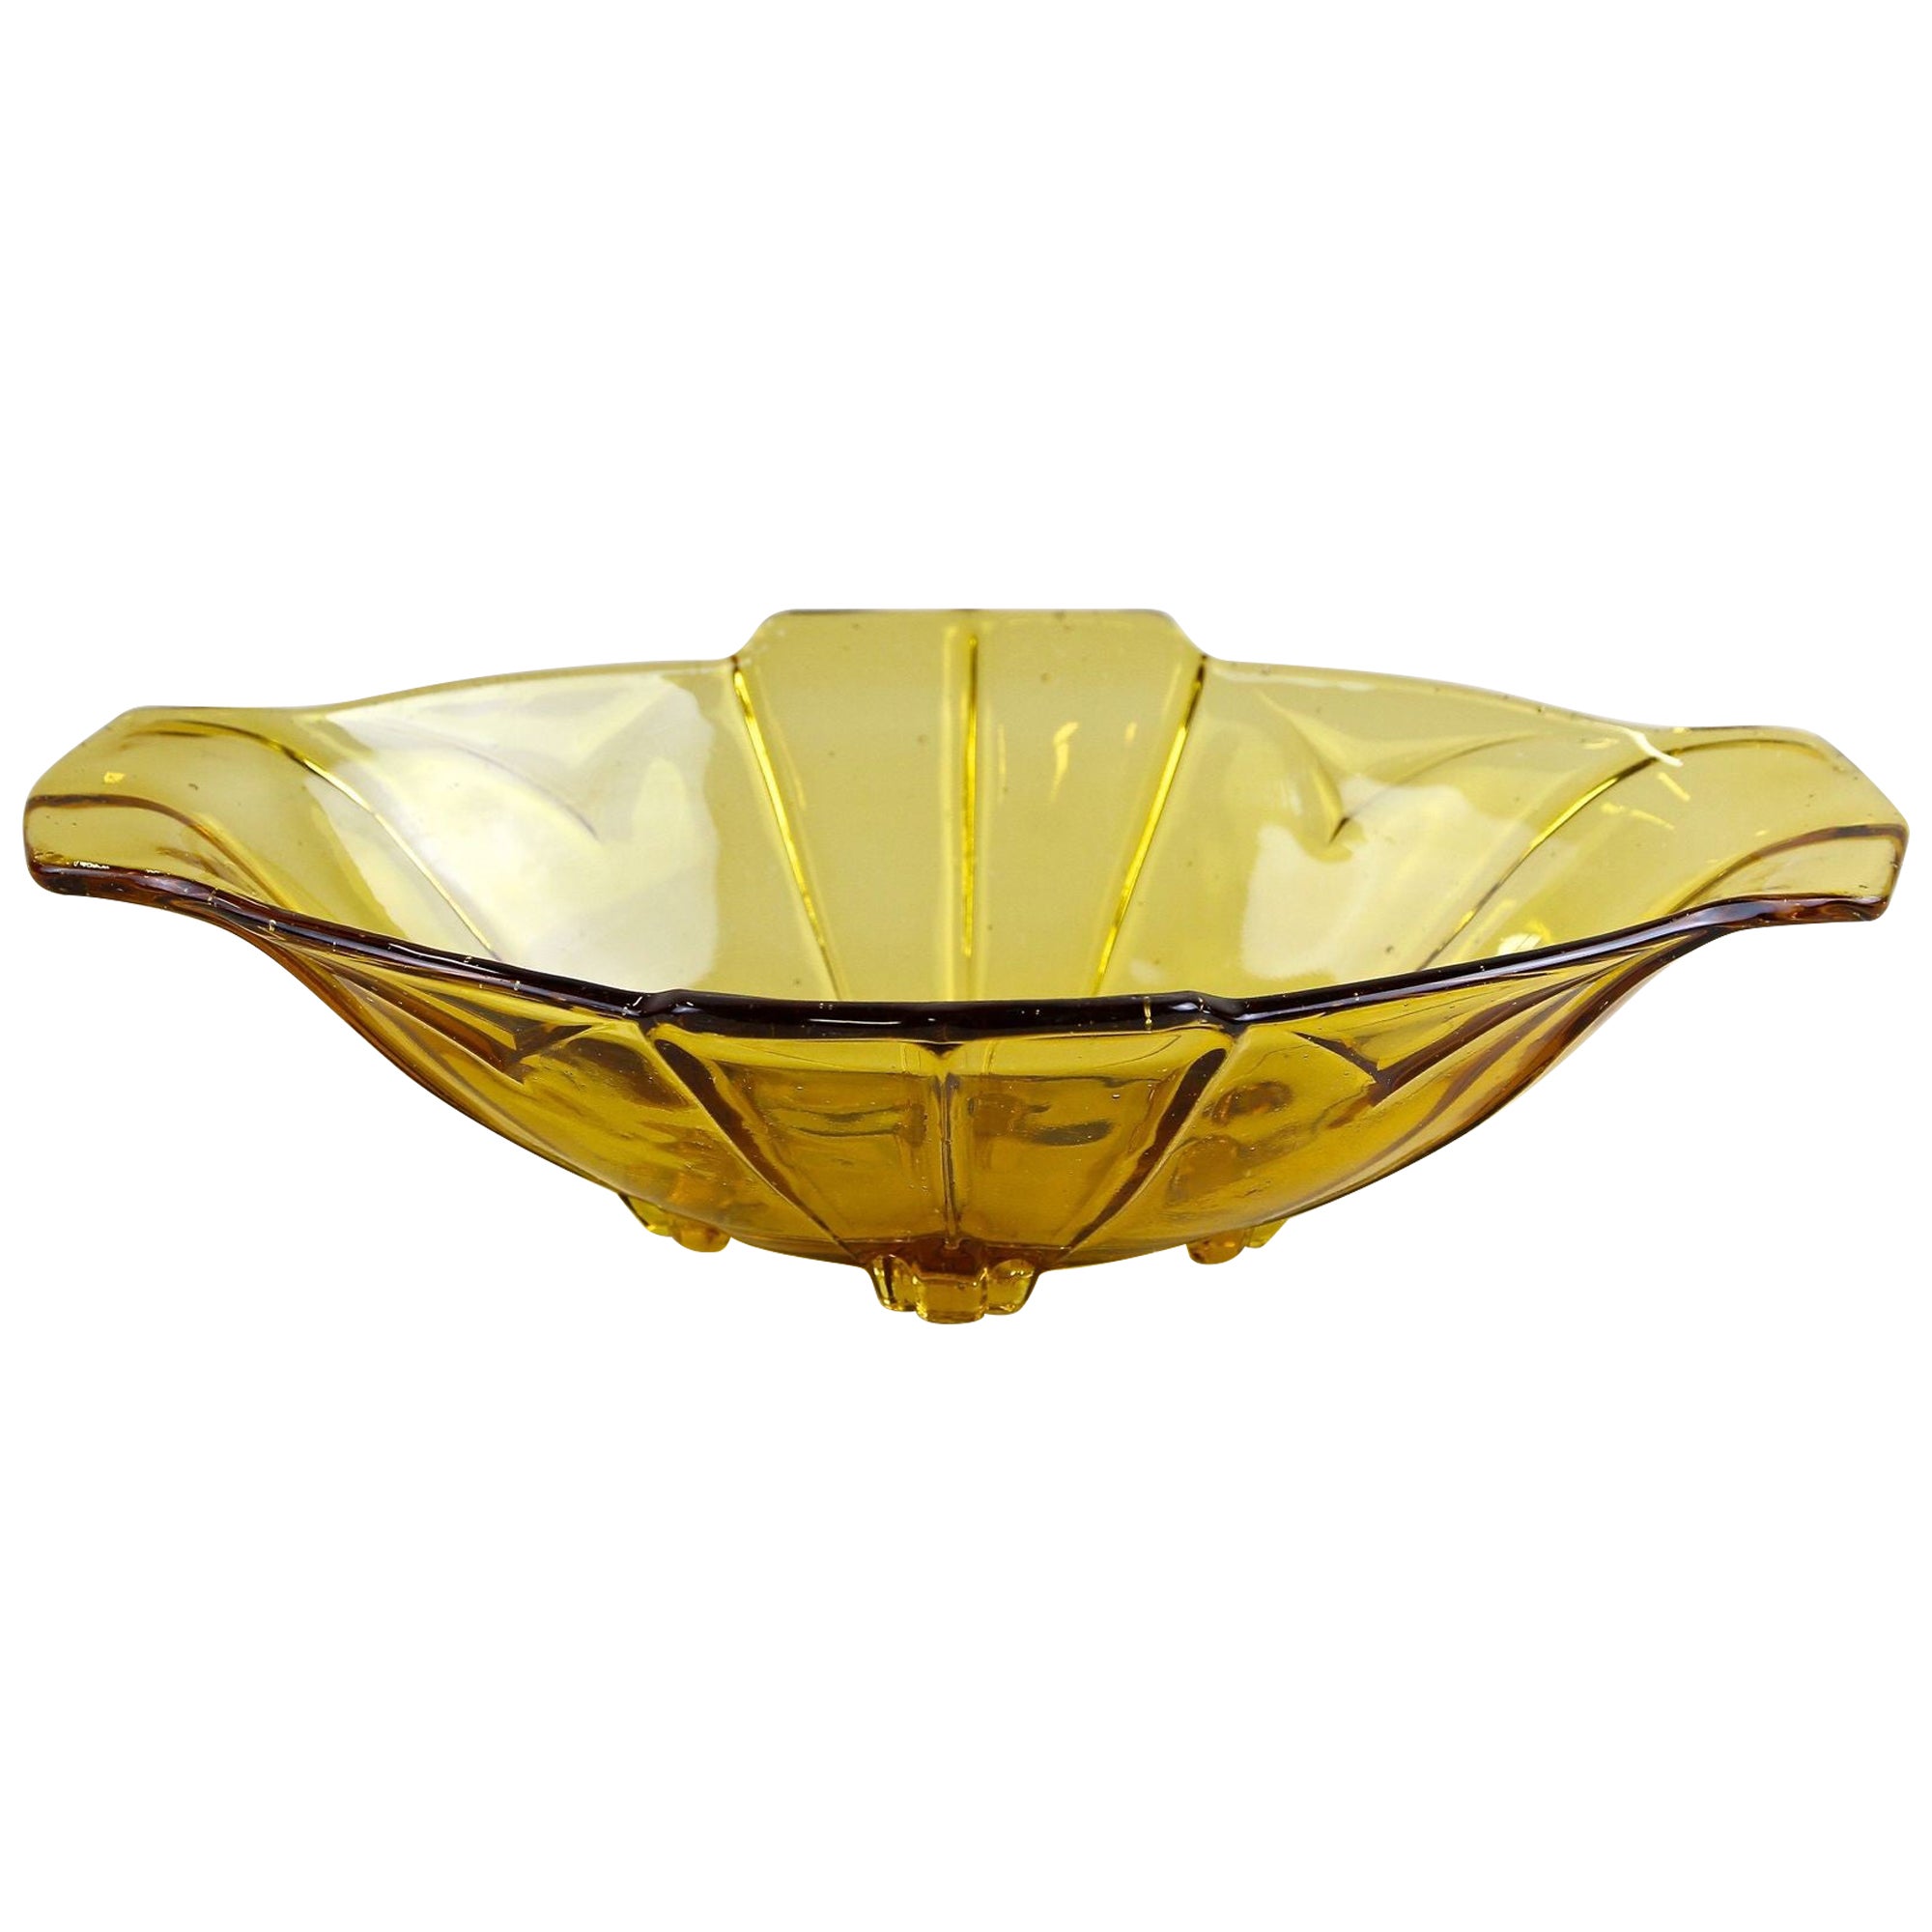 20th Century Art Deco Glass Bowl/ Jardiniere Amber Colored, Austria, circa 1920